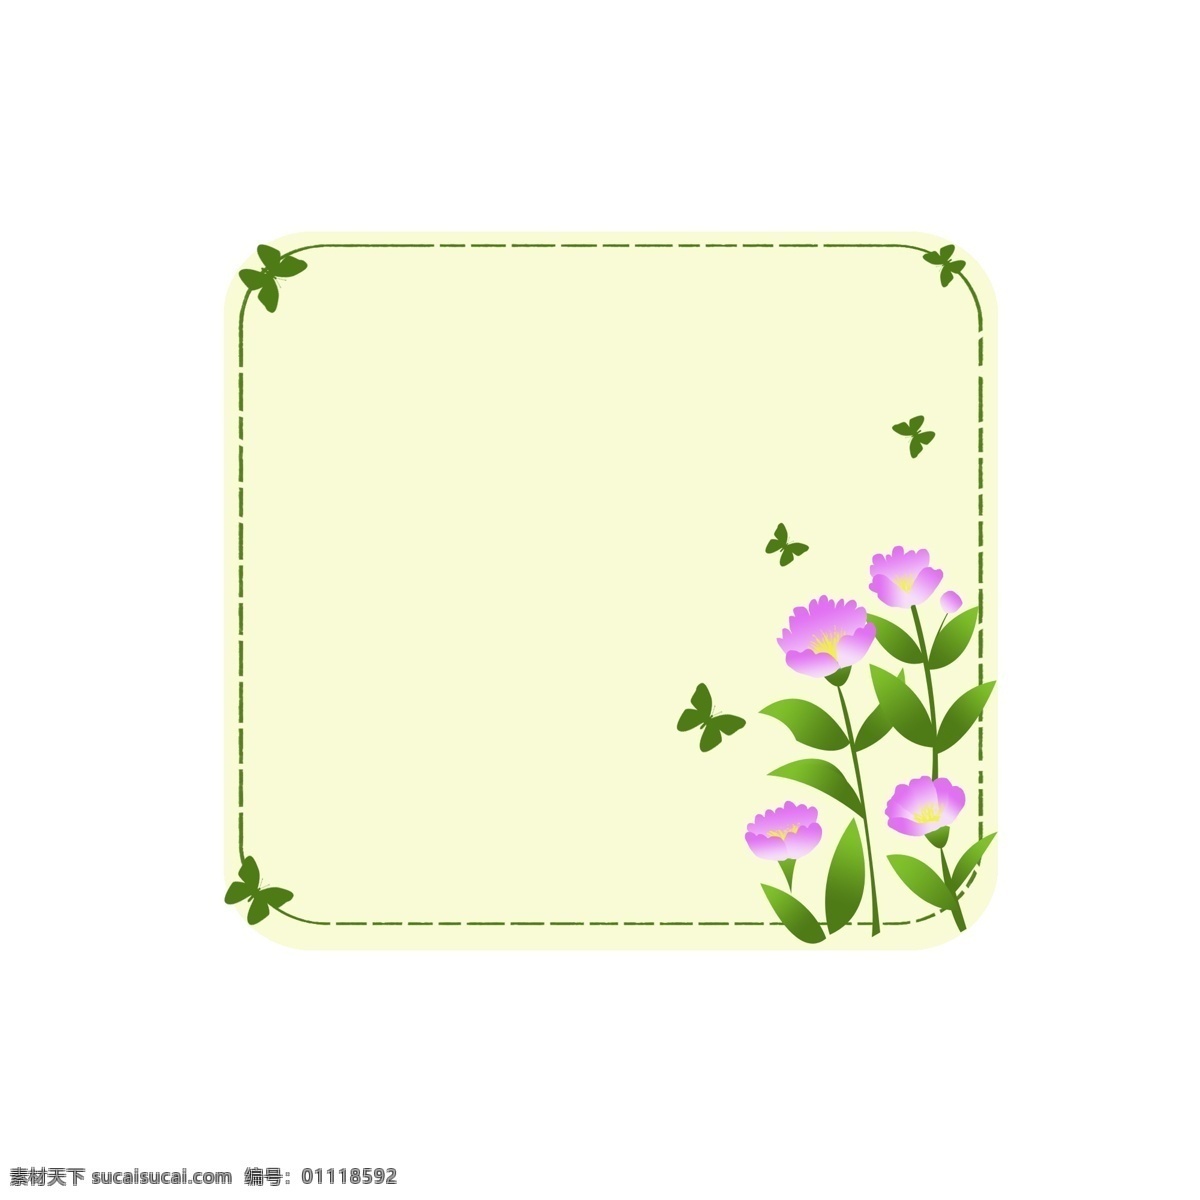 边框 植物边框 花朵边框 小清新边框 精致边框 植物 商用 花朵 蝴蝶 蝴蝶边框